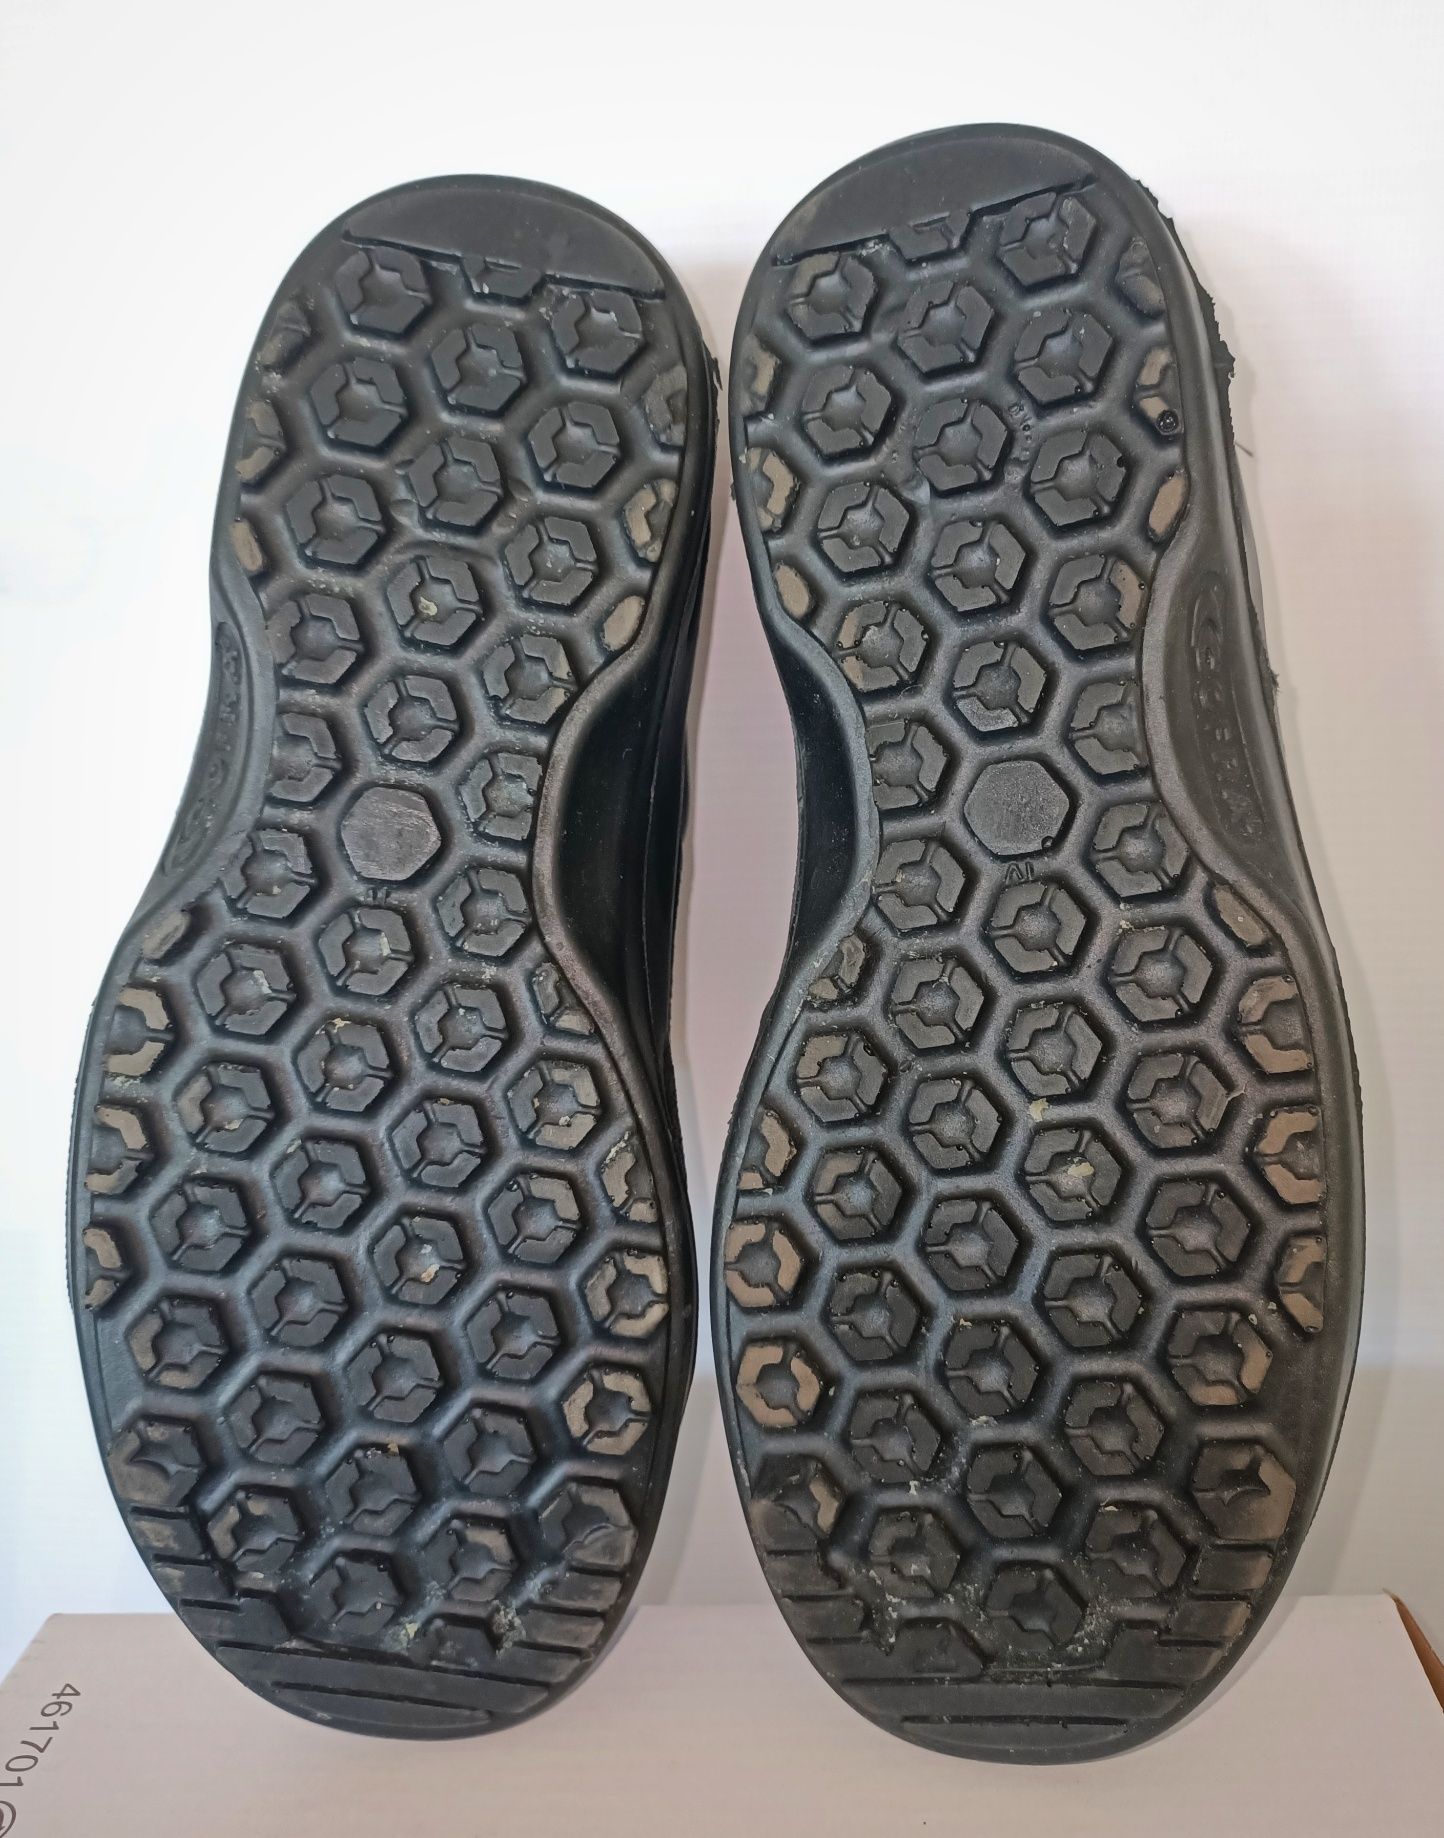 Corfa buty robocze damskie r.36 dł.wkładki 23,5skóra